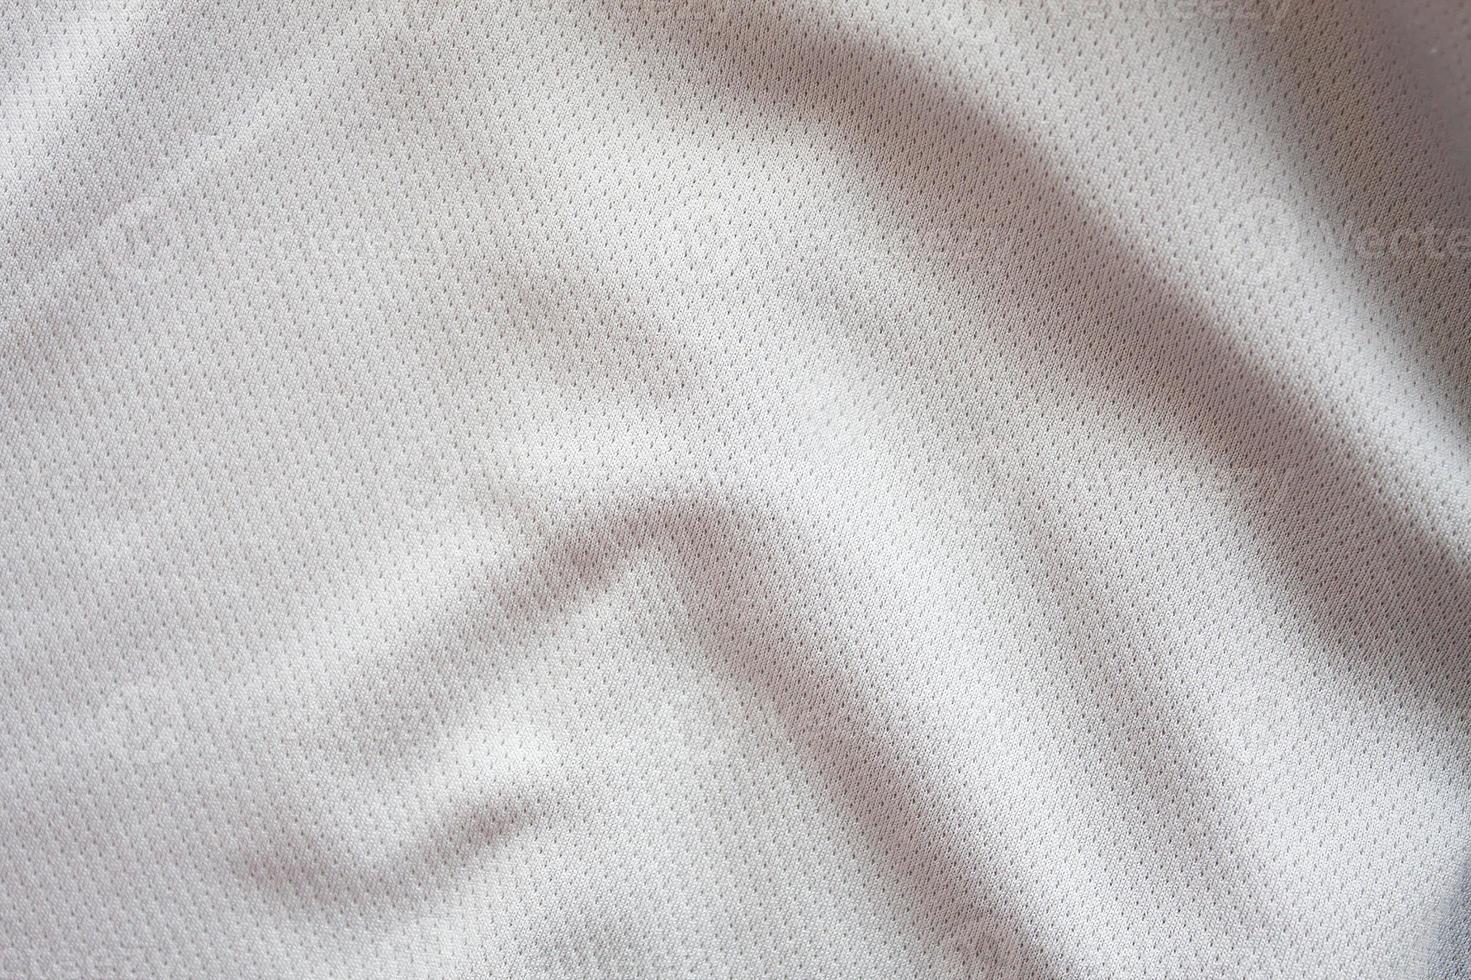 primer plano de la camiseta de fútbol con textura blanca foto